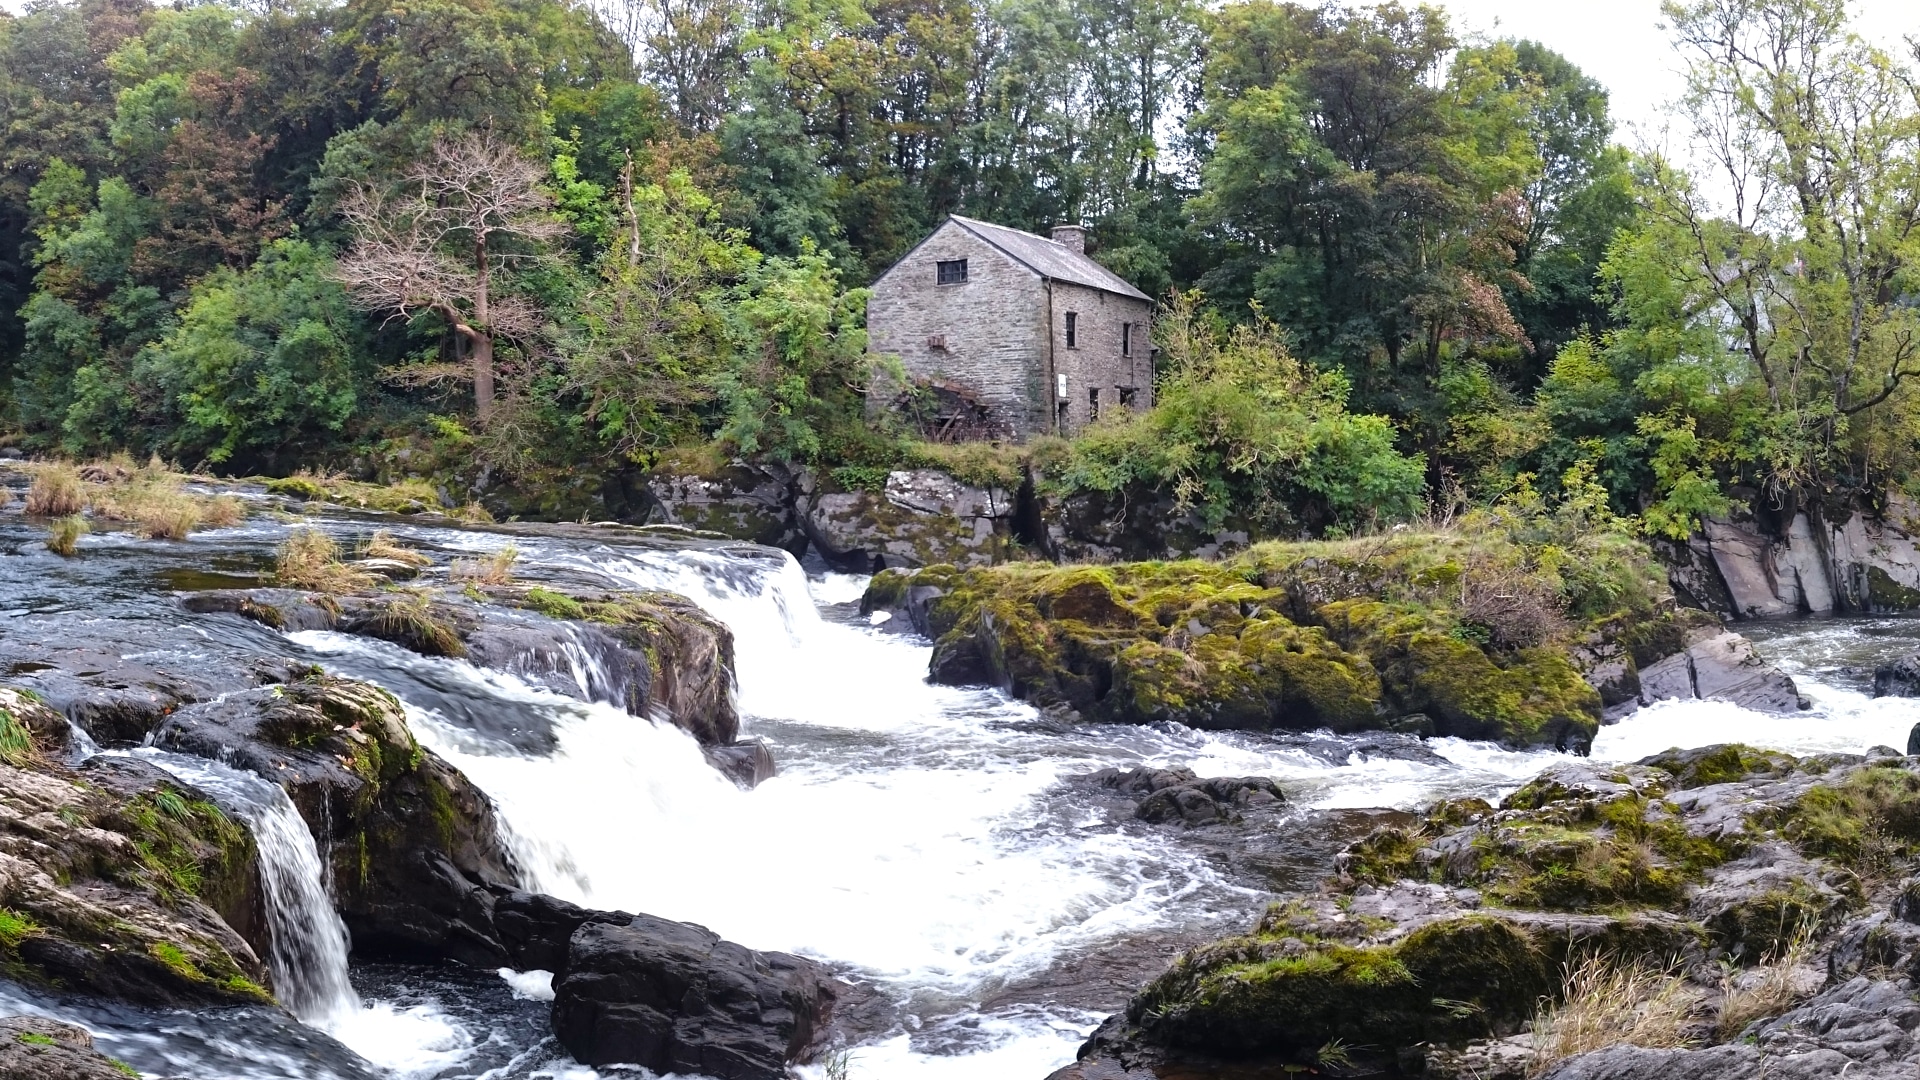 The Mill at Cenarth Falls